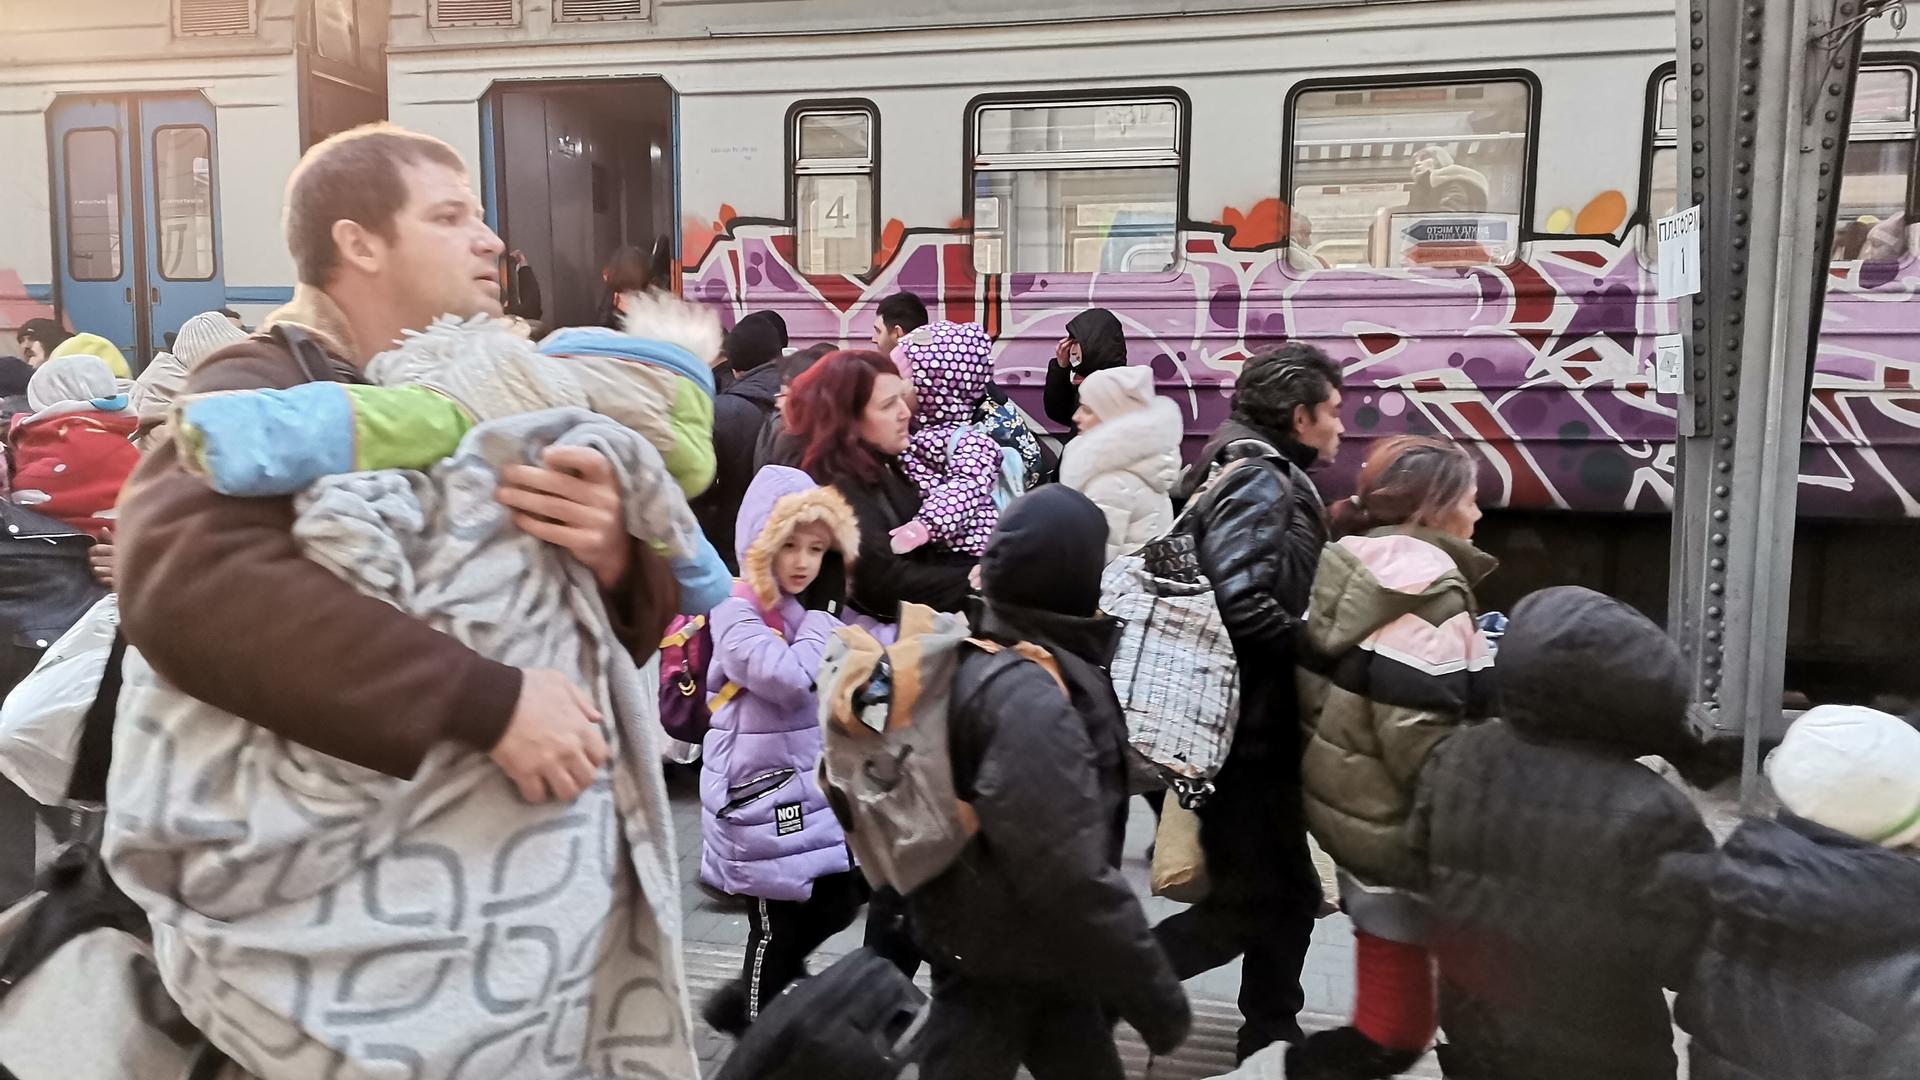 Lviv tem mais 200 mil habitantes permanentes que antes da guerra. Para mais, dezenas de milhares de refugiados ucranianos passam todos os dias pela estação de comboios a caminho da Polónia ou da Roménia.